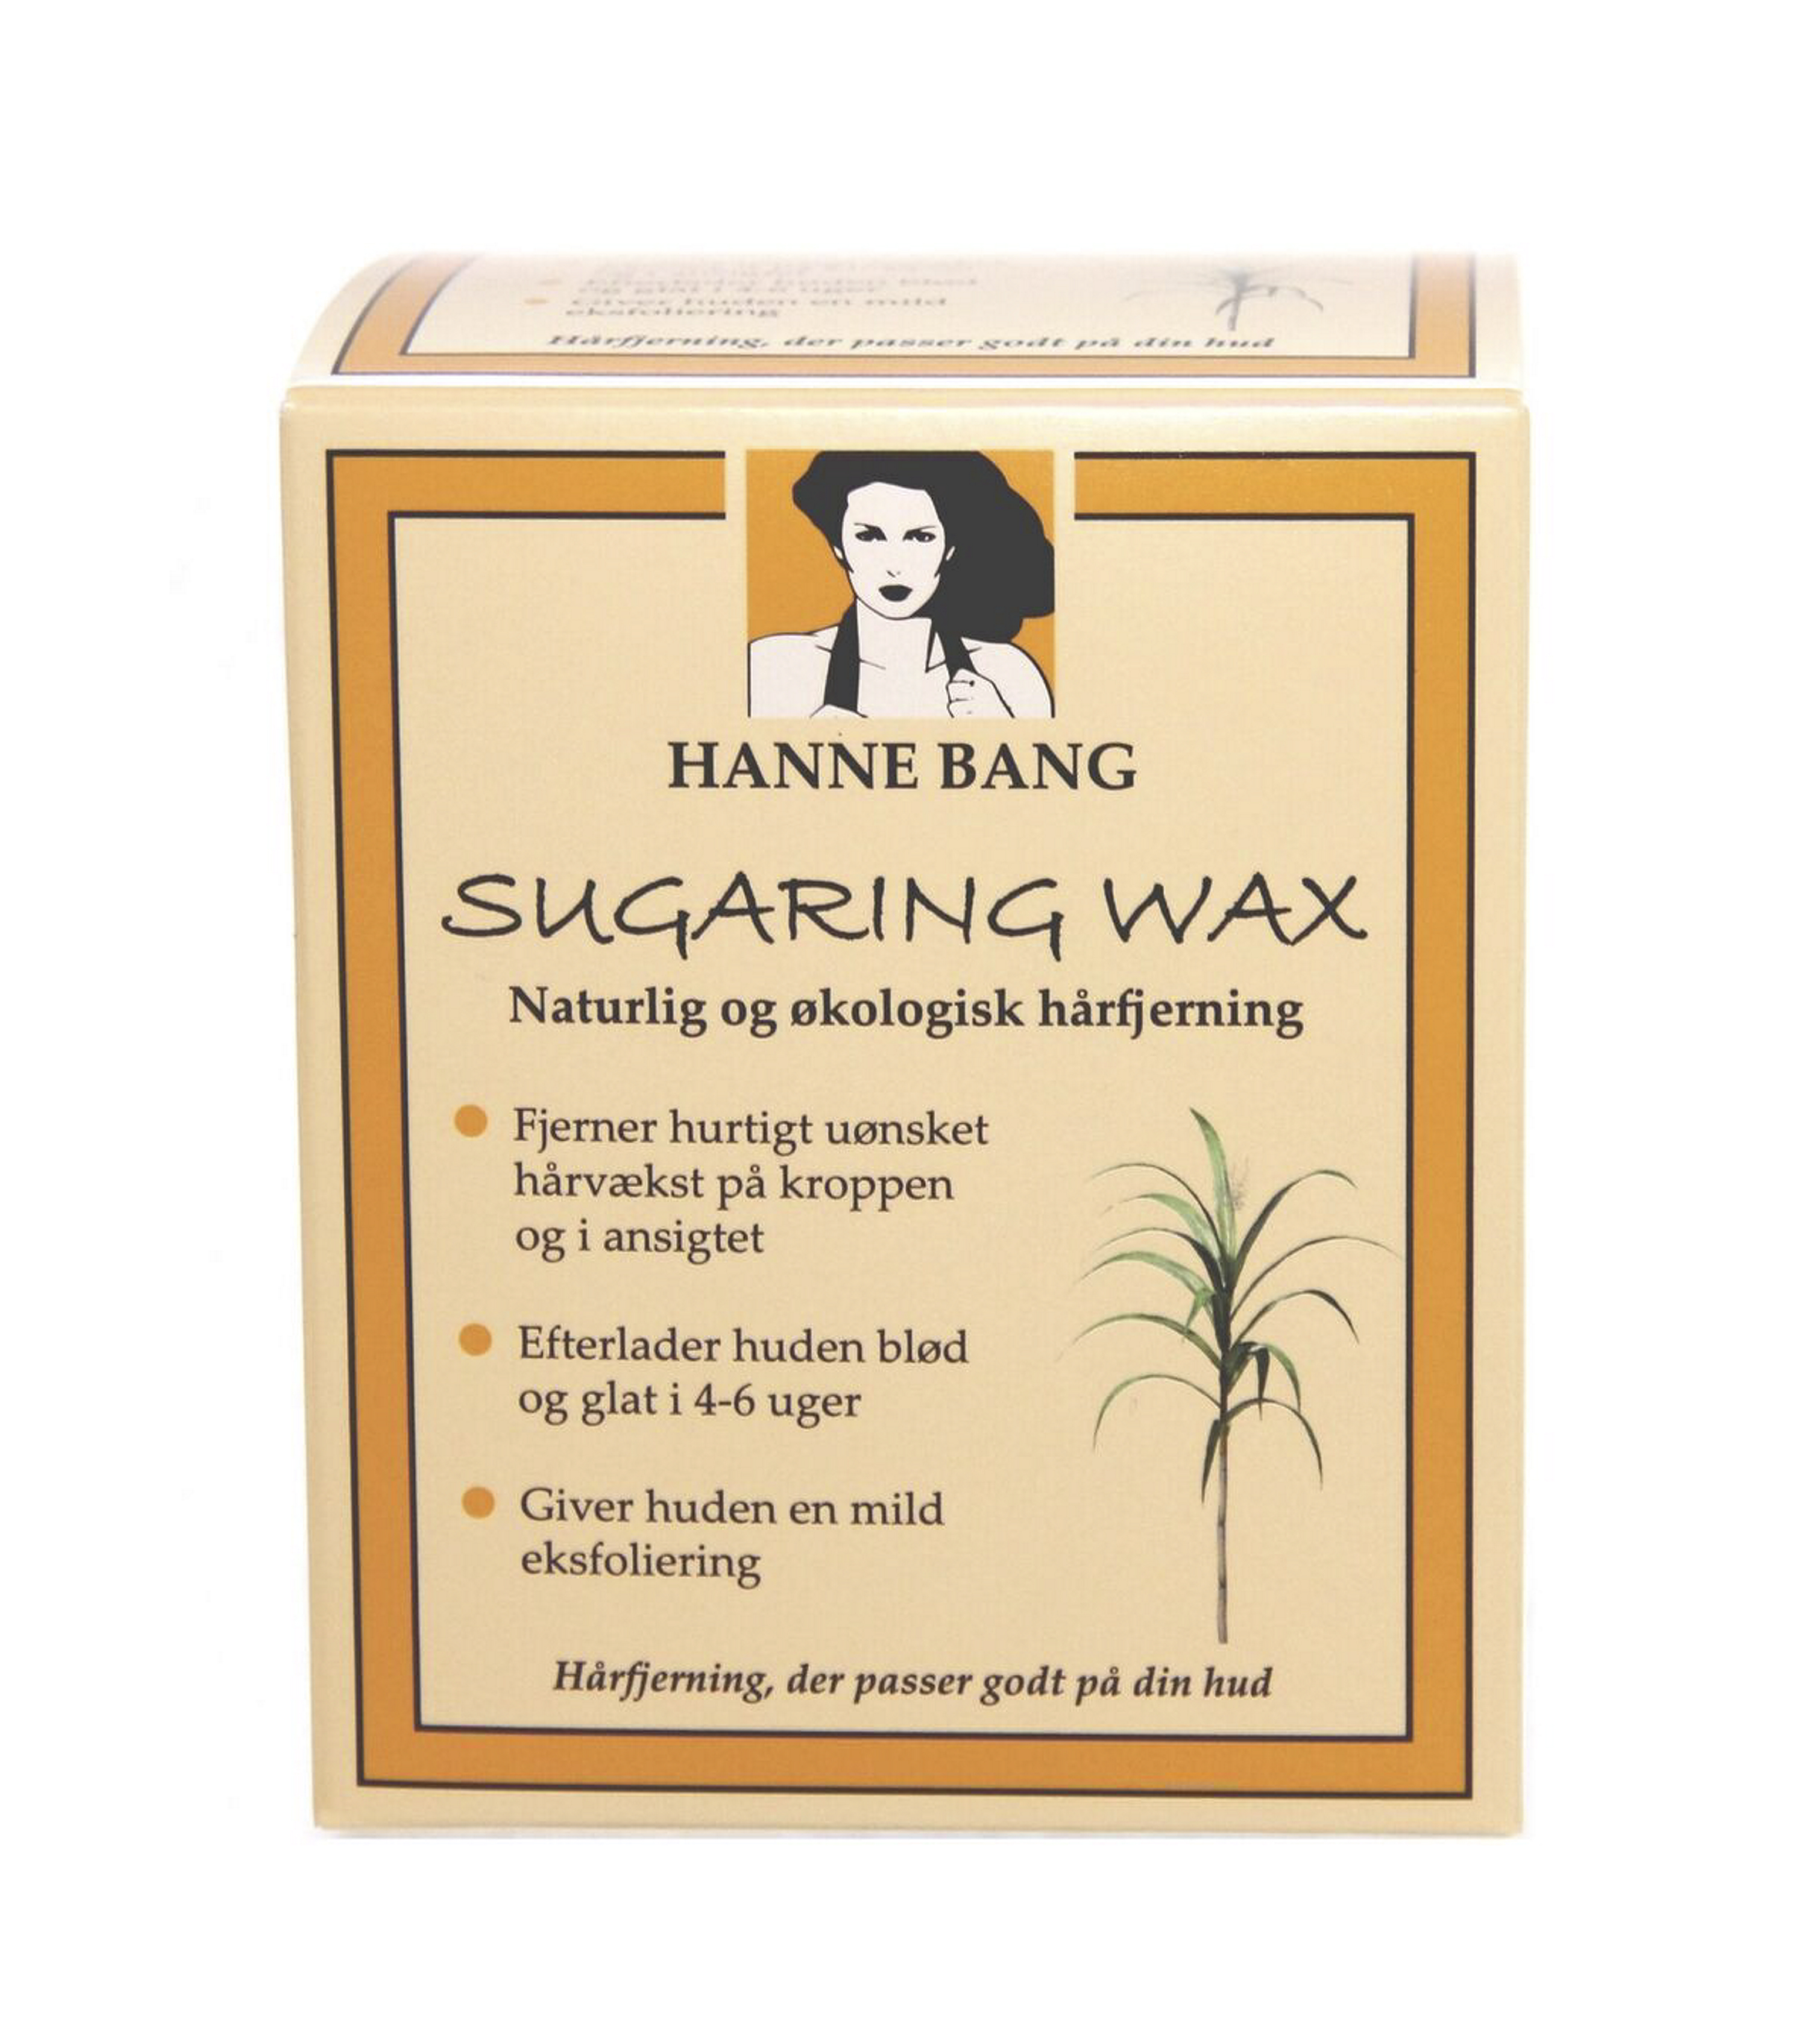 hanne bang sugaring wax